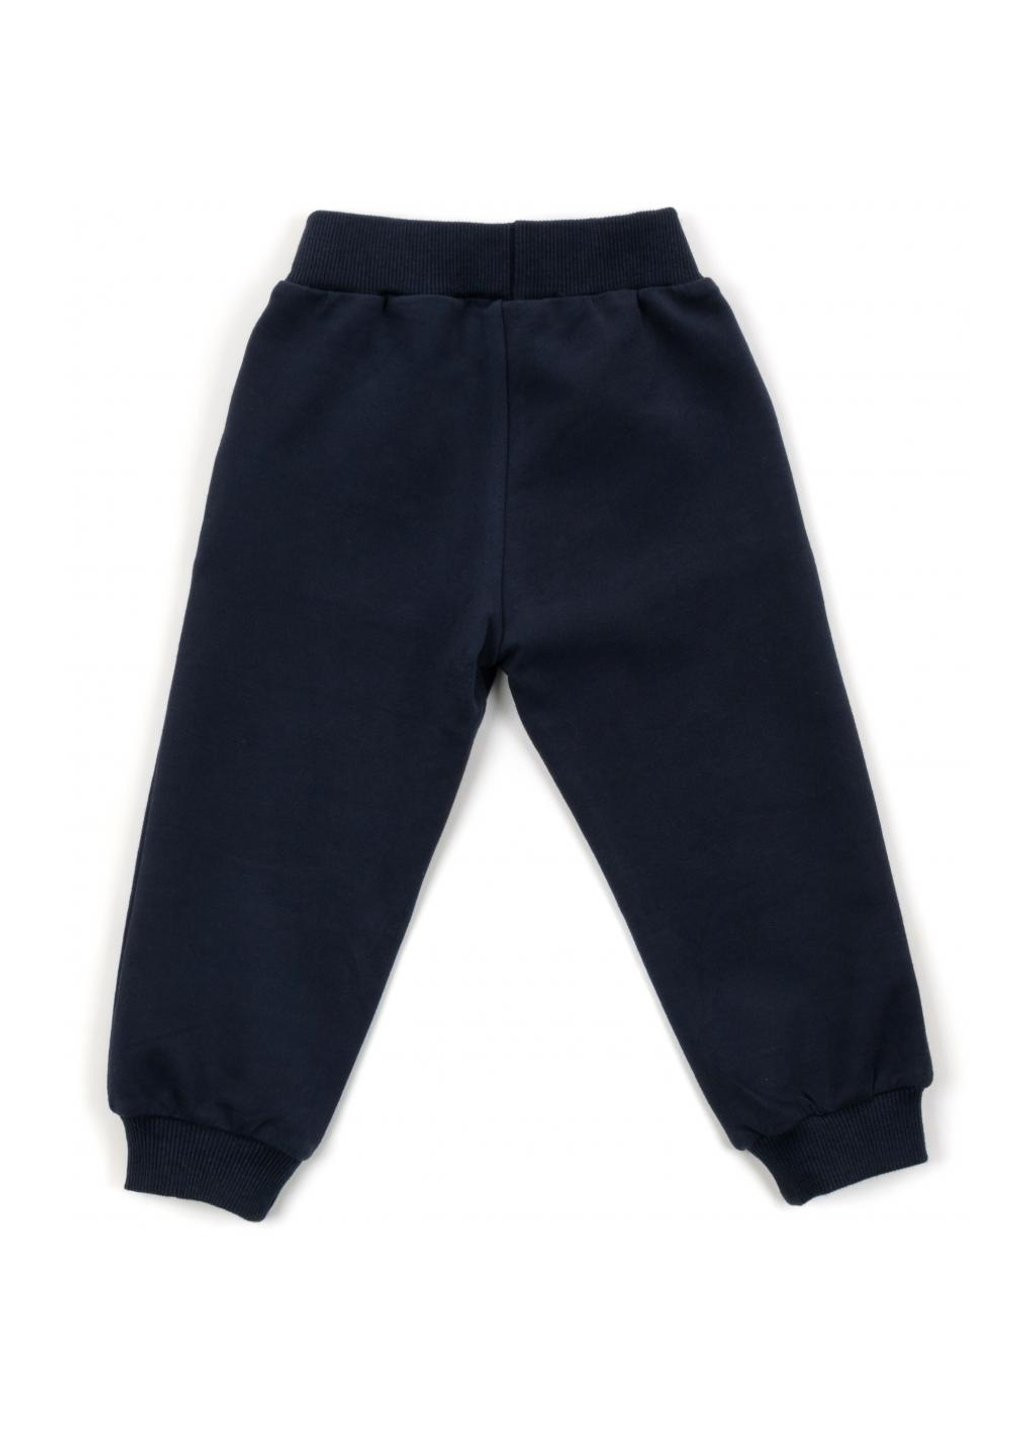 Сірий демісезонний набір дитячого одягу "game" (14435-86b-gray) Breeze